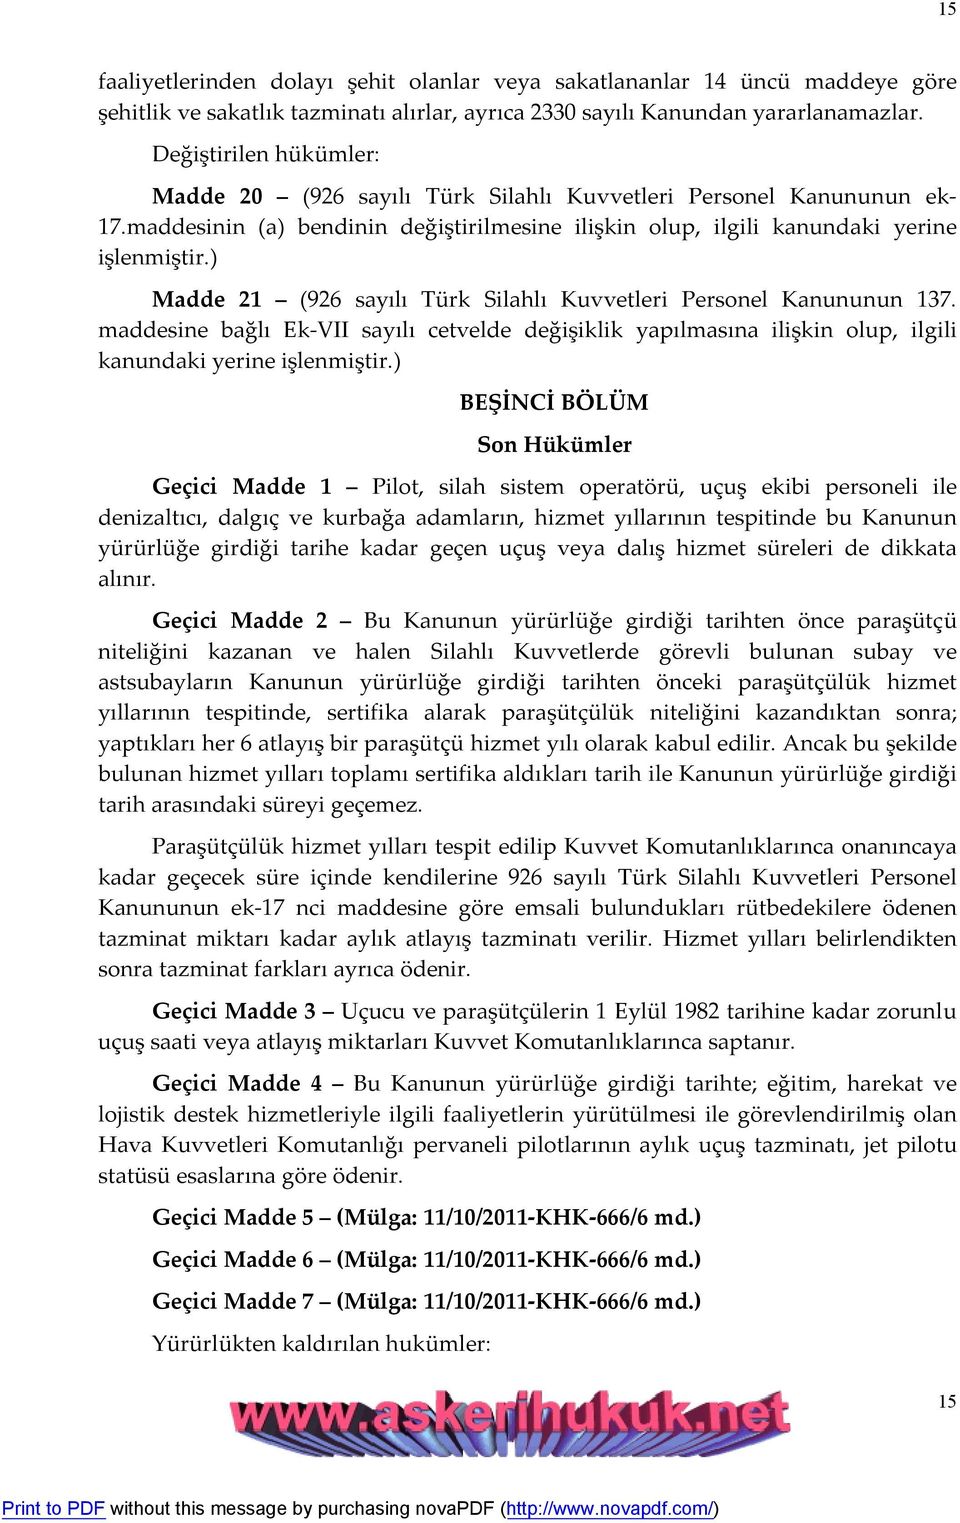 ) Madde 21 (926 sayılı Türk Silahlı Kuvvetleri Personel Kanununun 137. maddesine bağlı Ek-VII sayılı cetvelde değişiklik yapılmasına ilişkin olup, ilgili kanundaki yerine işlenmiştir.